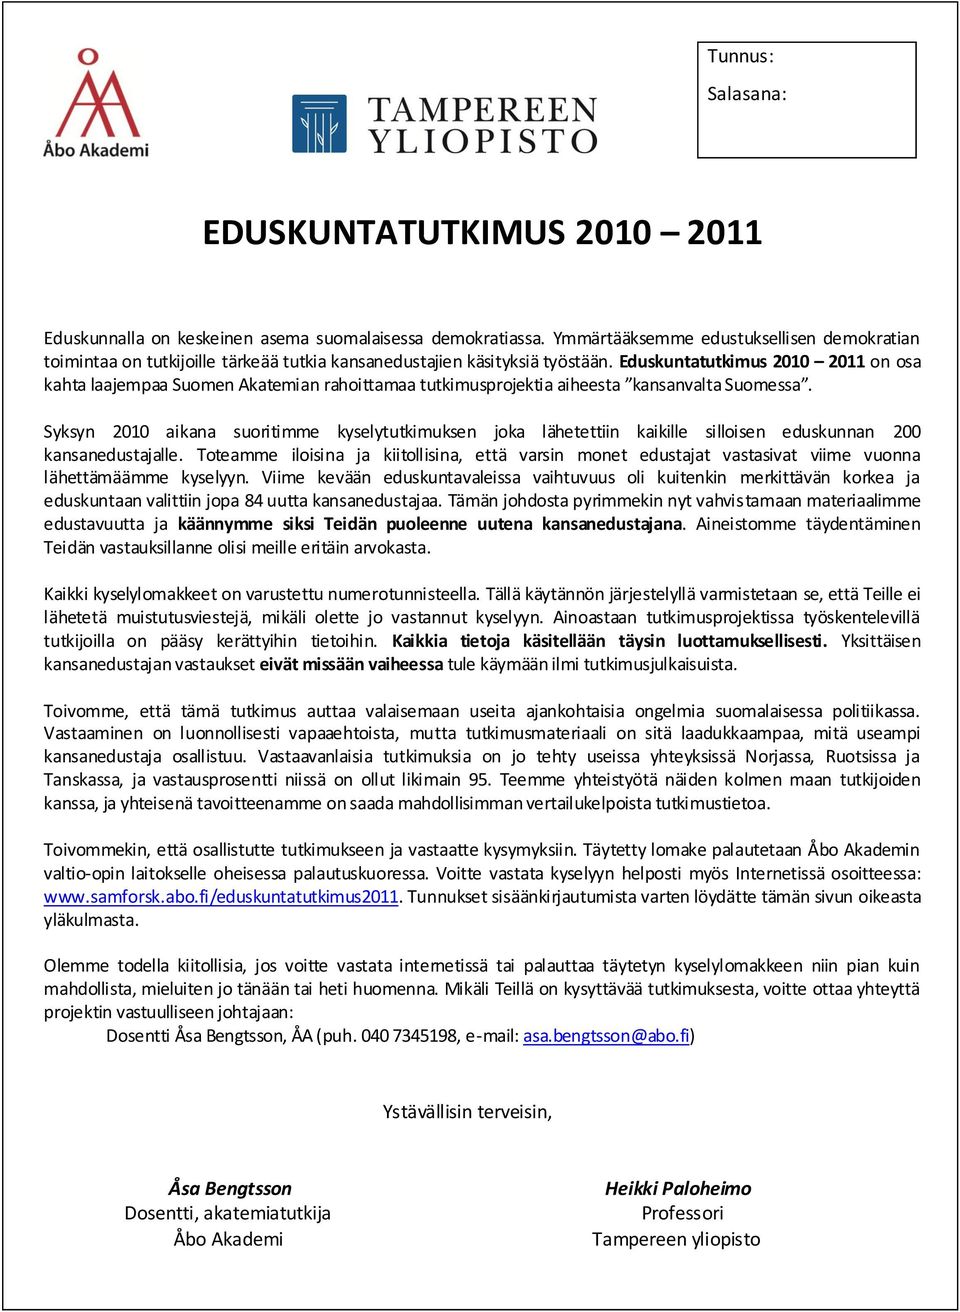 Eduskuntatutkimus 2010 2011 on osa kahta laajempaa Suomen Akatemian rahoittamaa tutkimusprojektia aiheesta kansanvalta Suomessa.